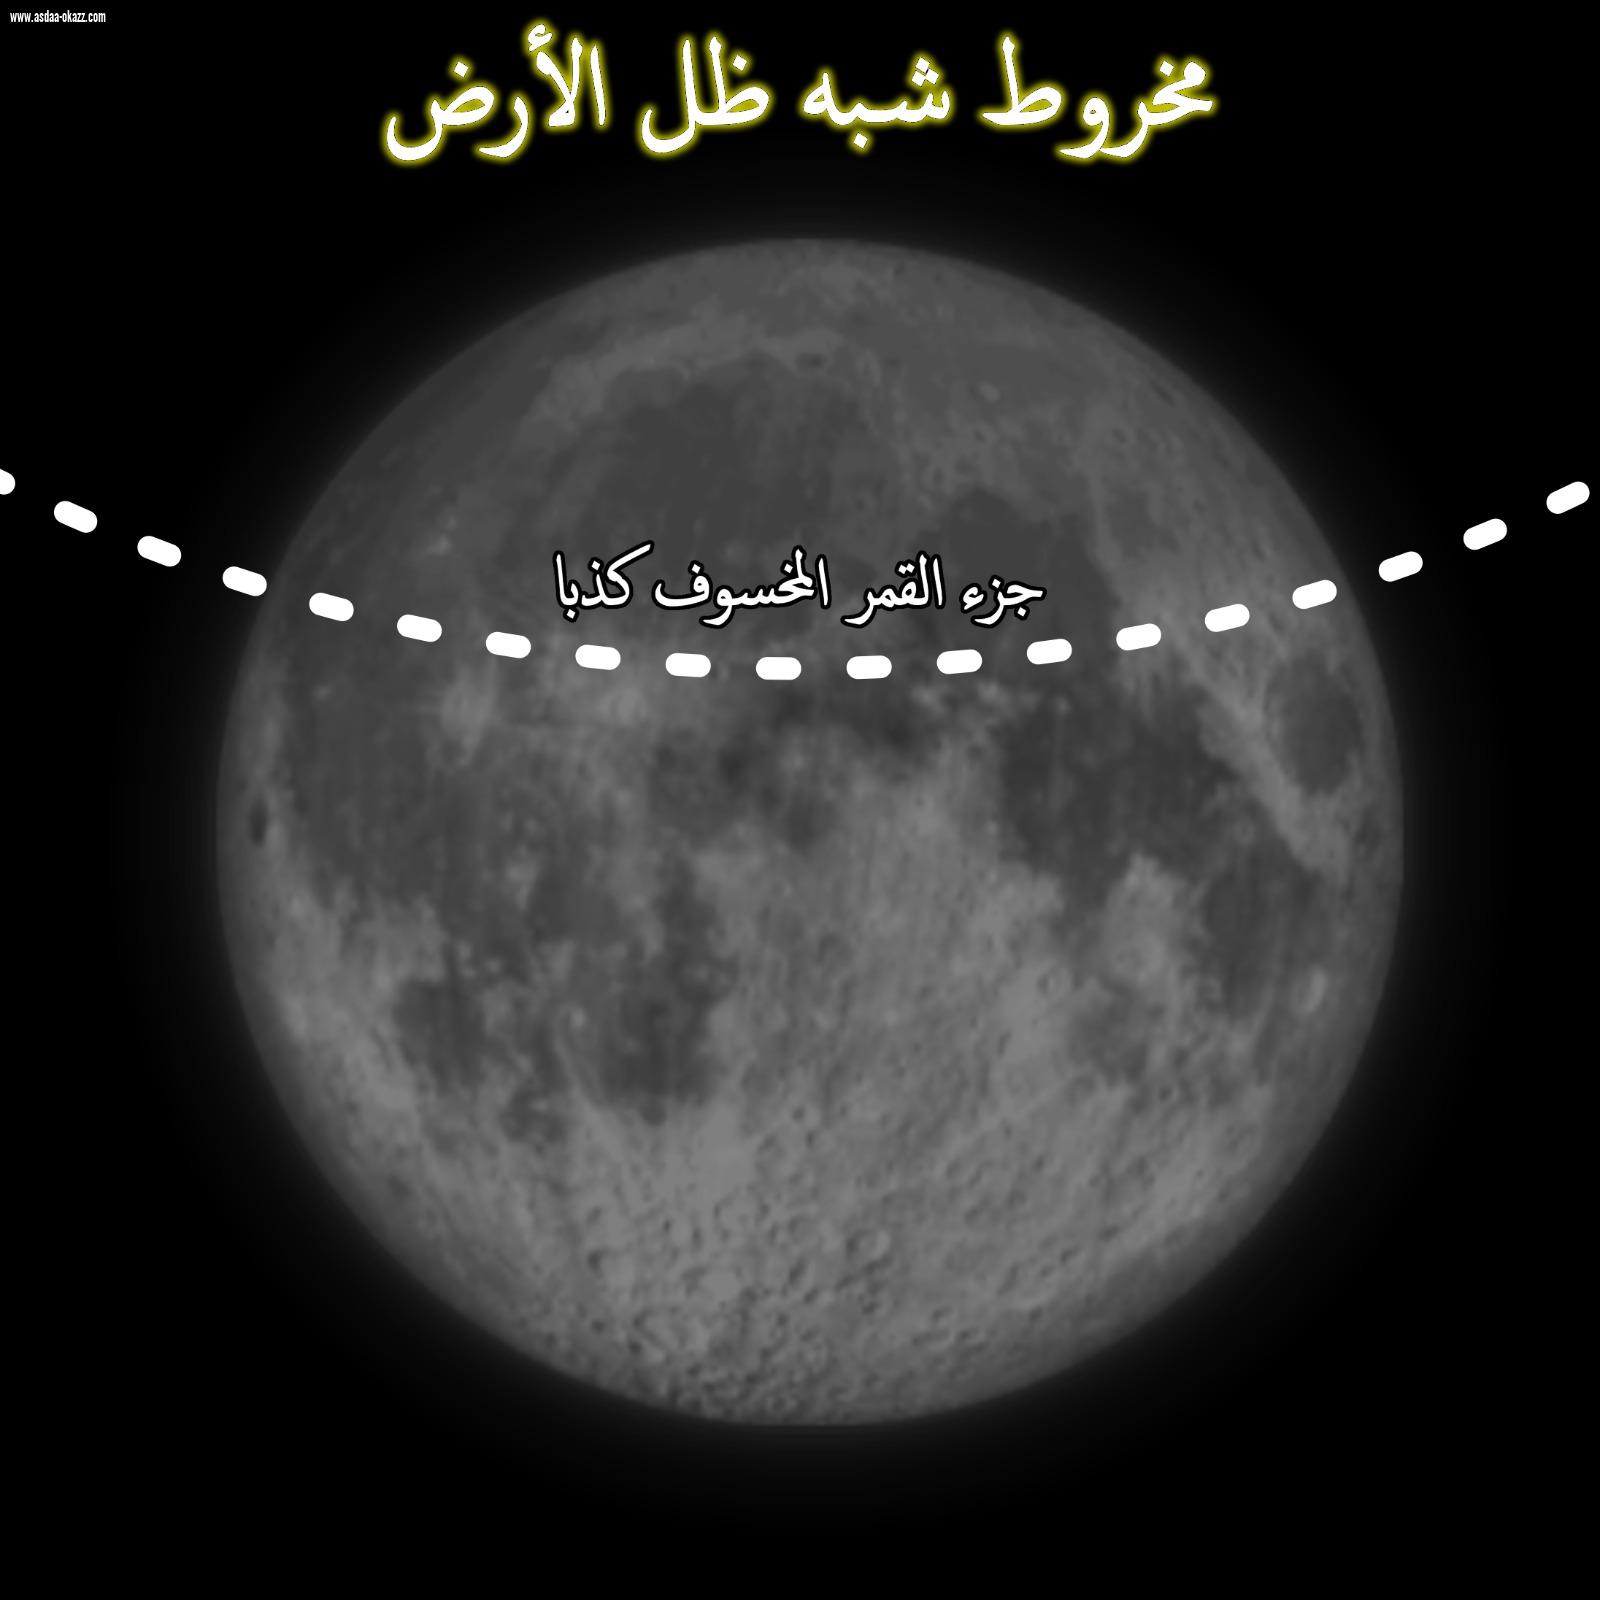 خسوف كاذب للقمر غير مرئي في دول الخليج صباح يوم الأحد القادم